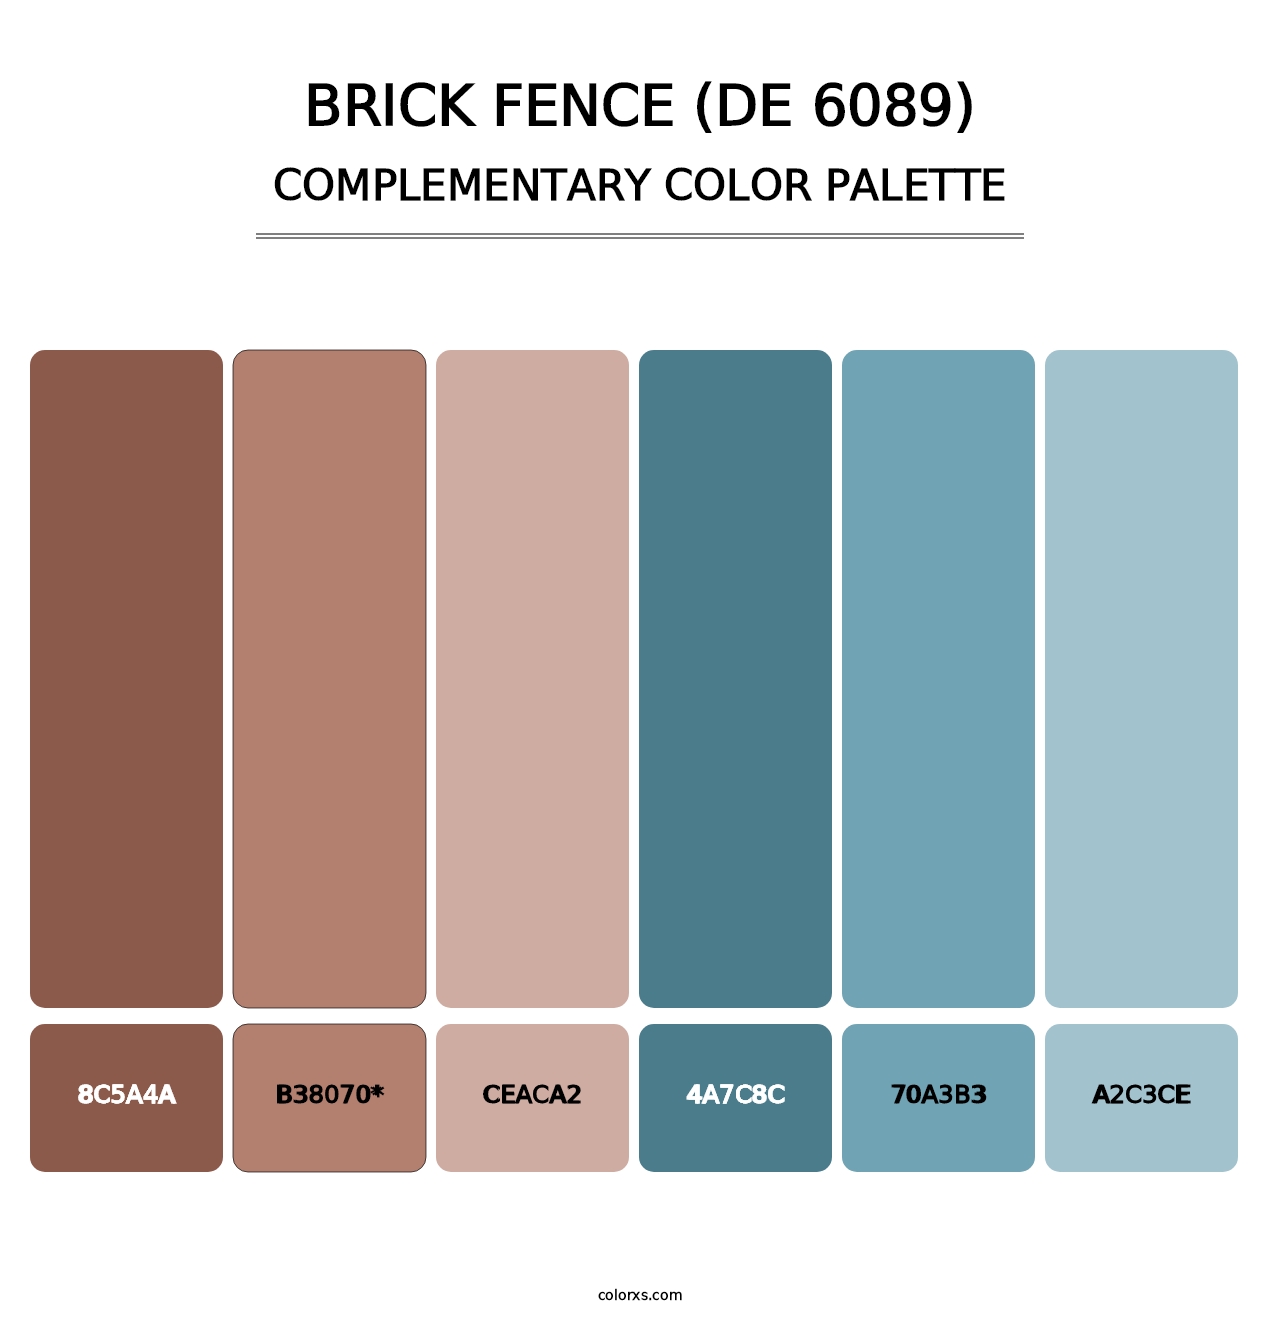 Brick Fence (DE 6089) - Complementary Color Palette